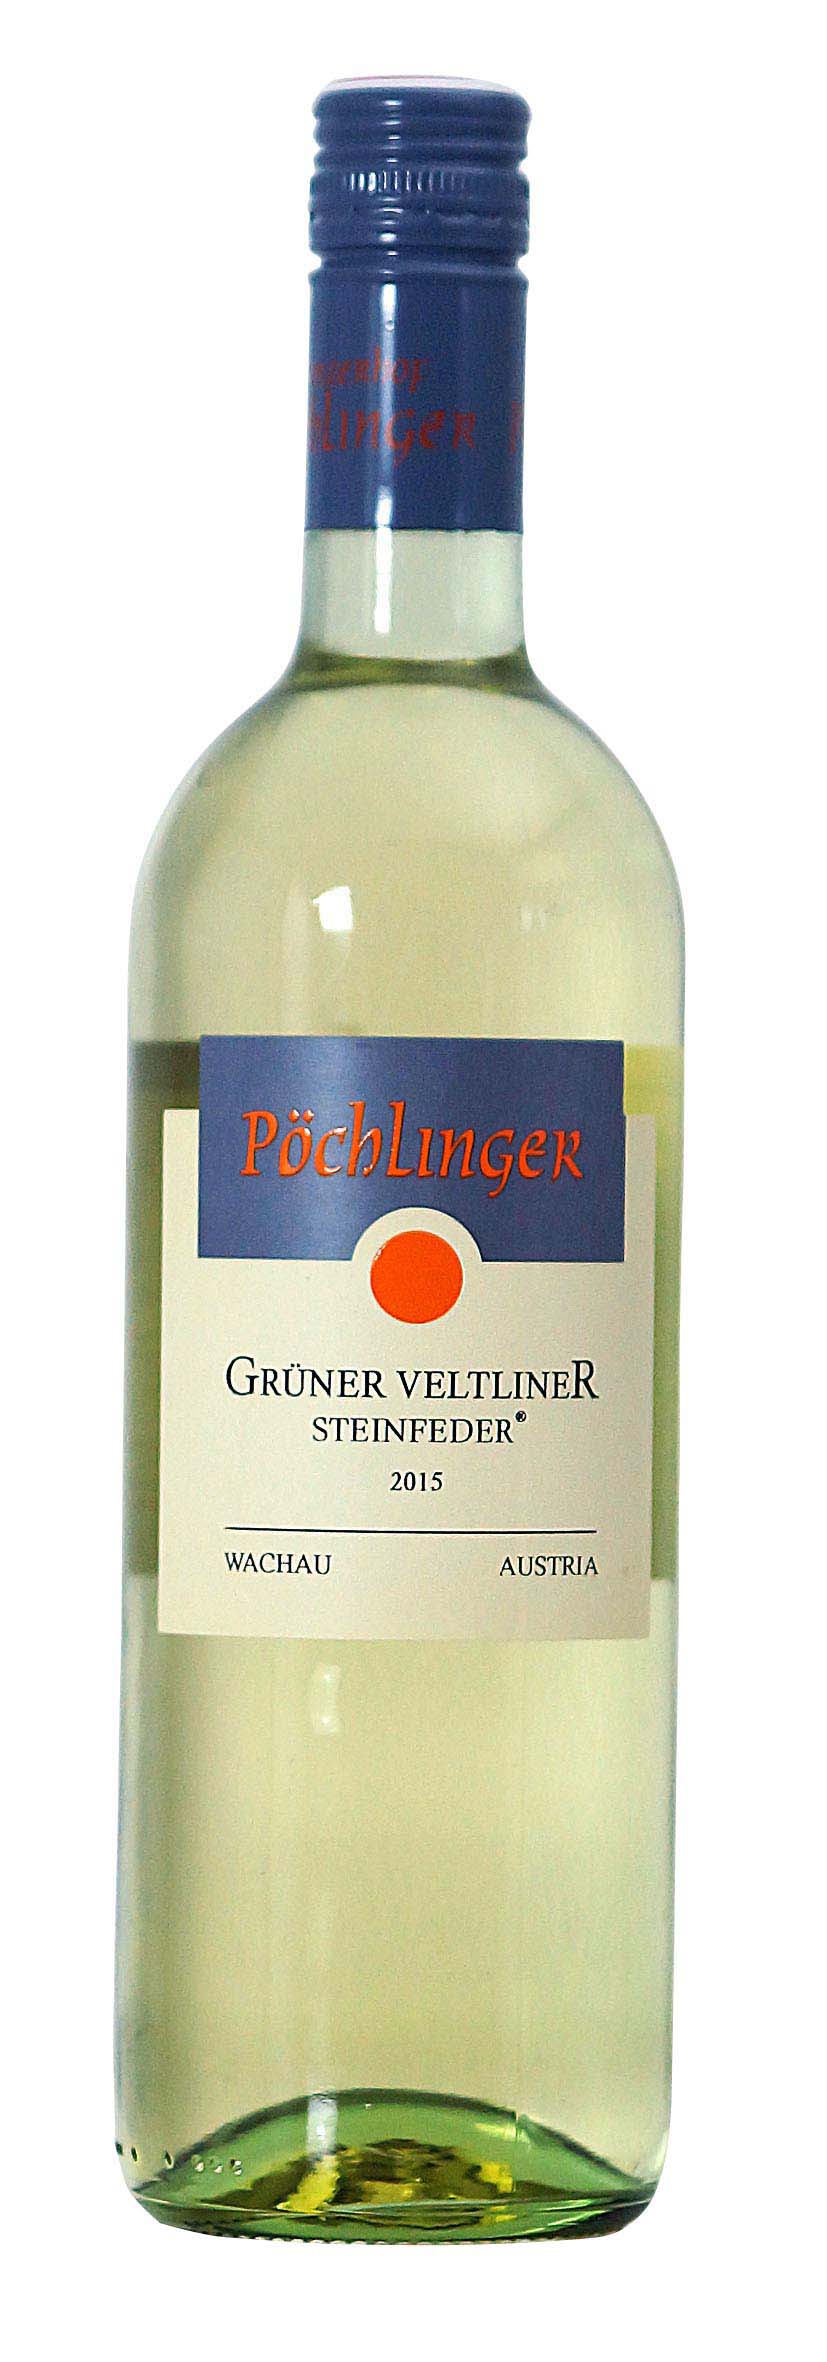 Grüner Veltliner Steinfeder 2015